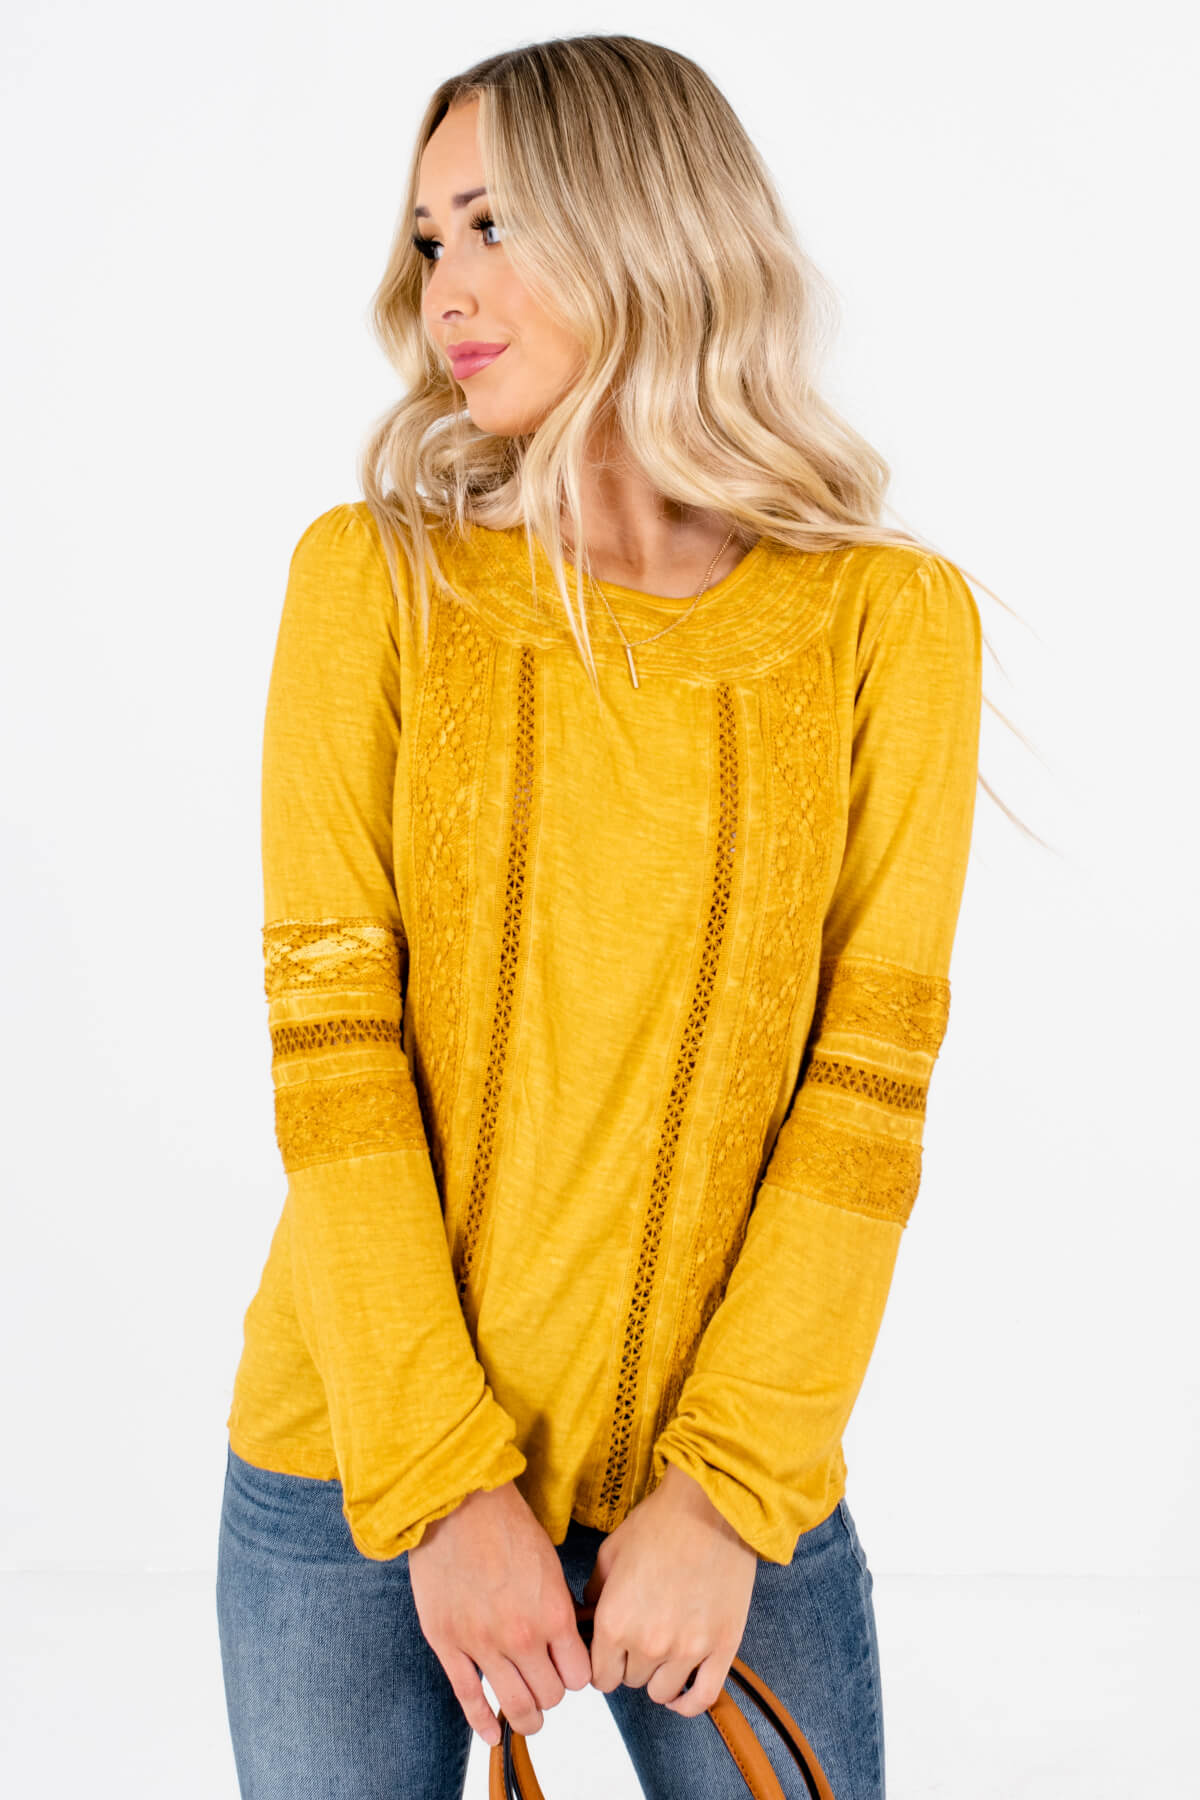 Women’s Mustard Yellow Round Neckline Boutique Tops